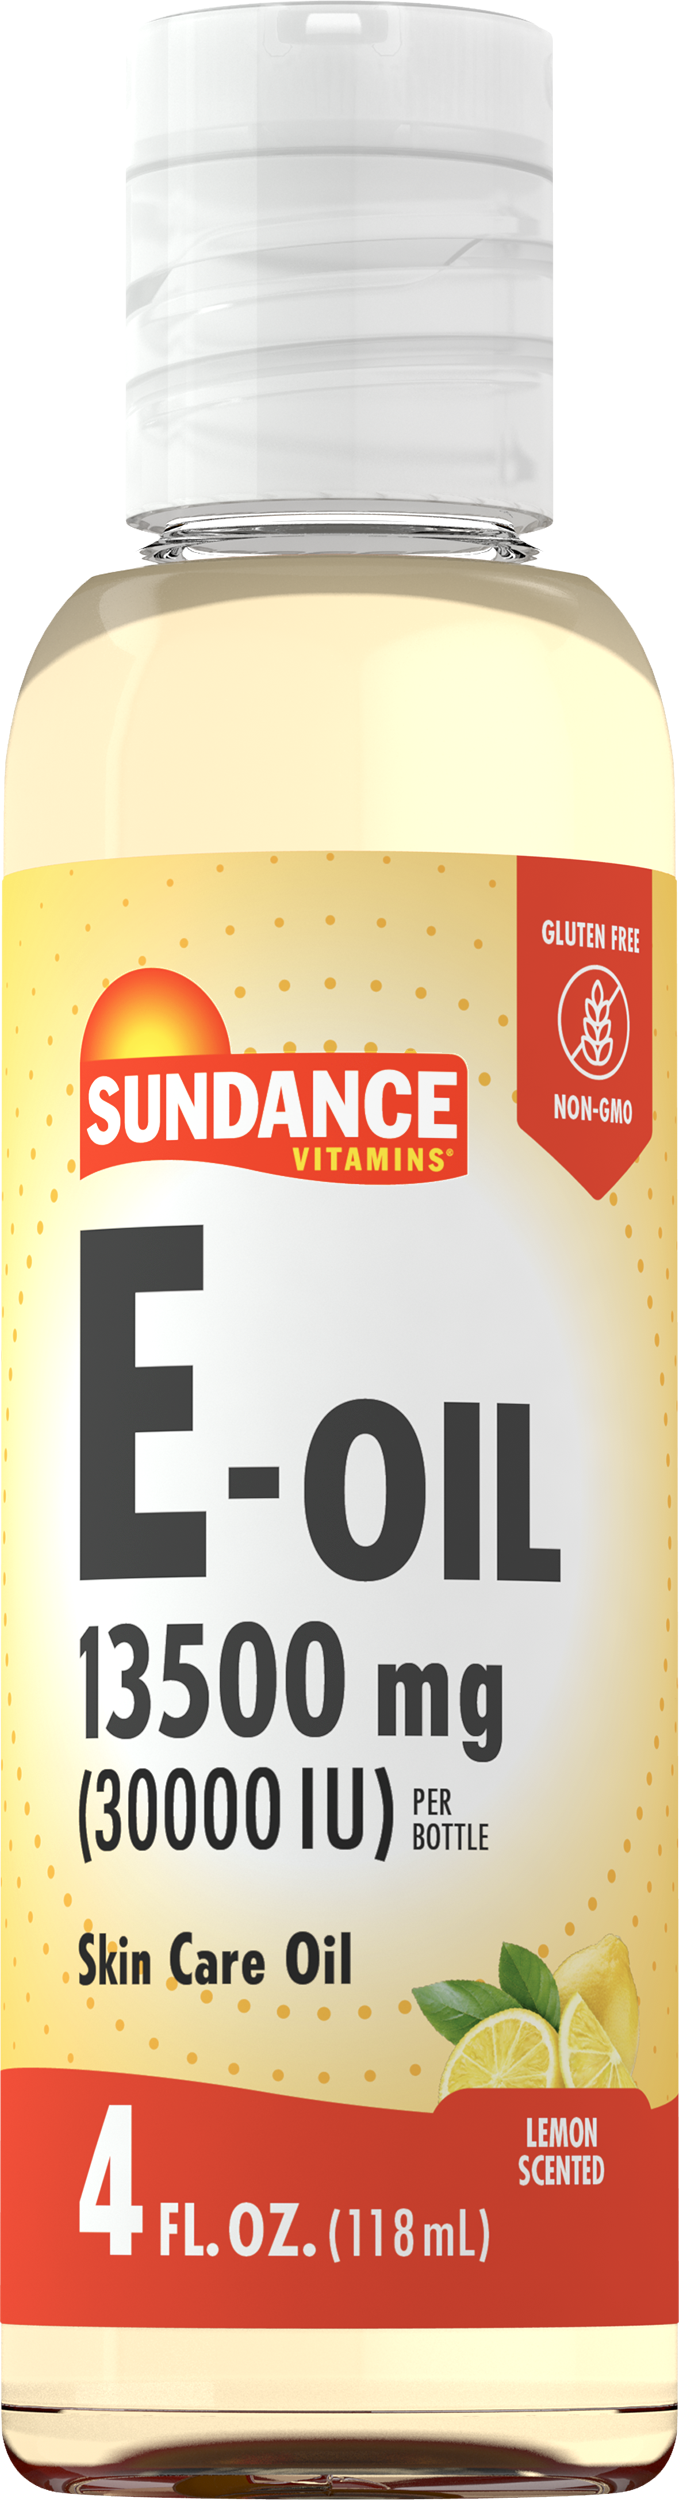 Vitamin E-Oil 13500mg